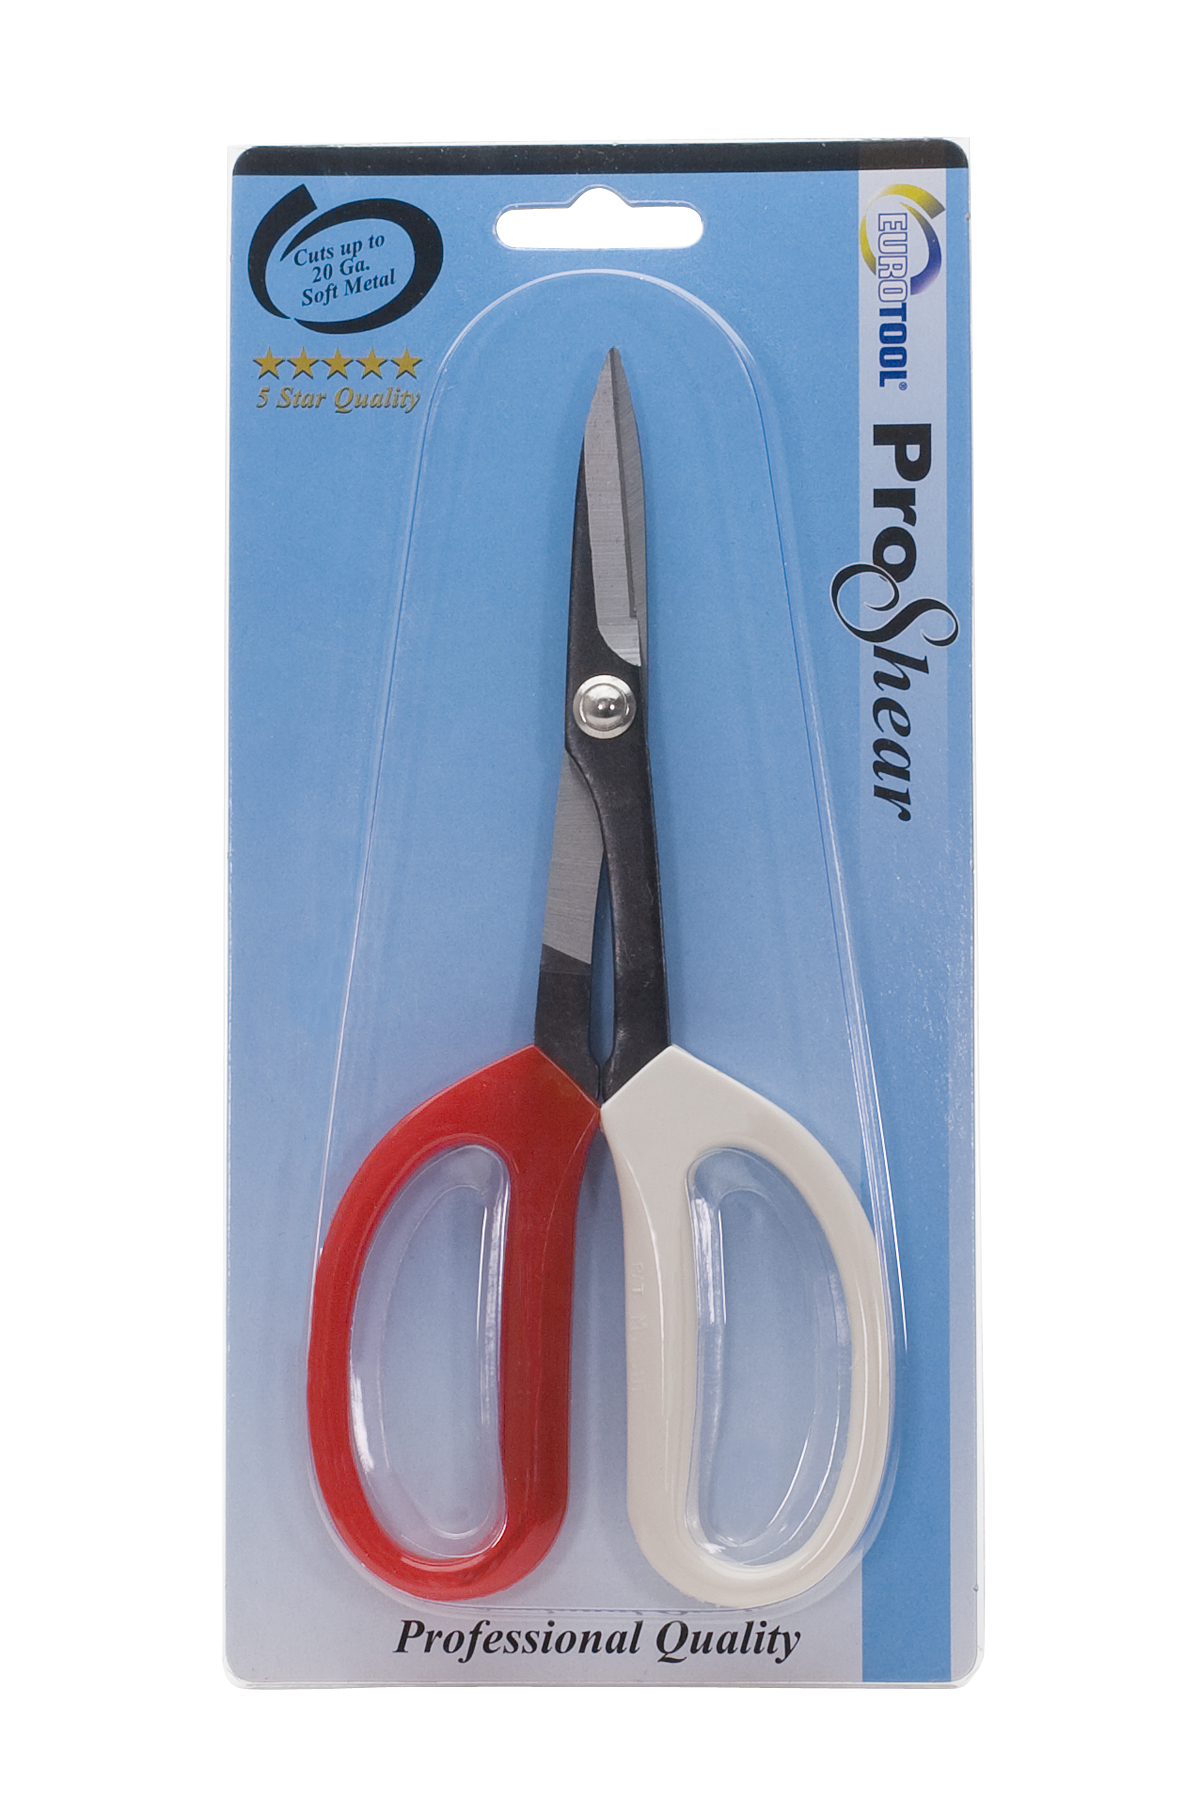 ProShear Scissors for Soft Metals Contenti 410-929